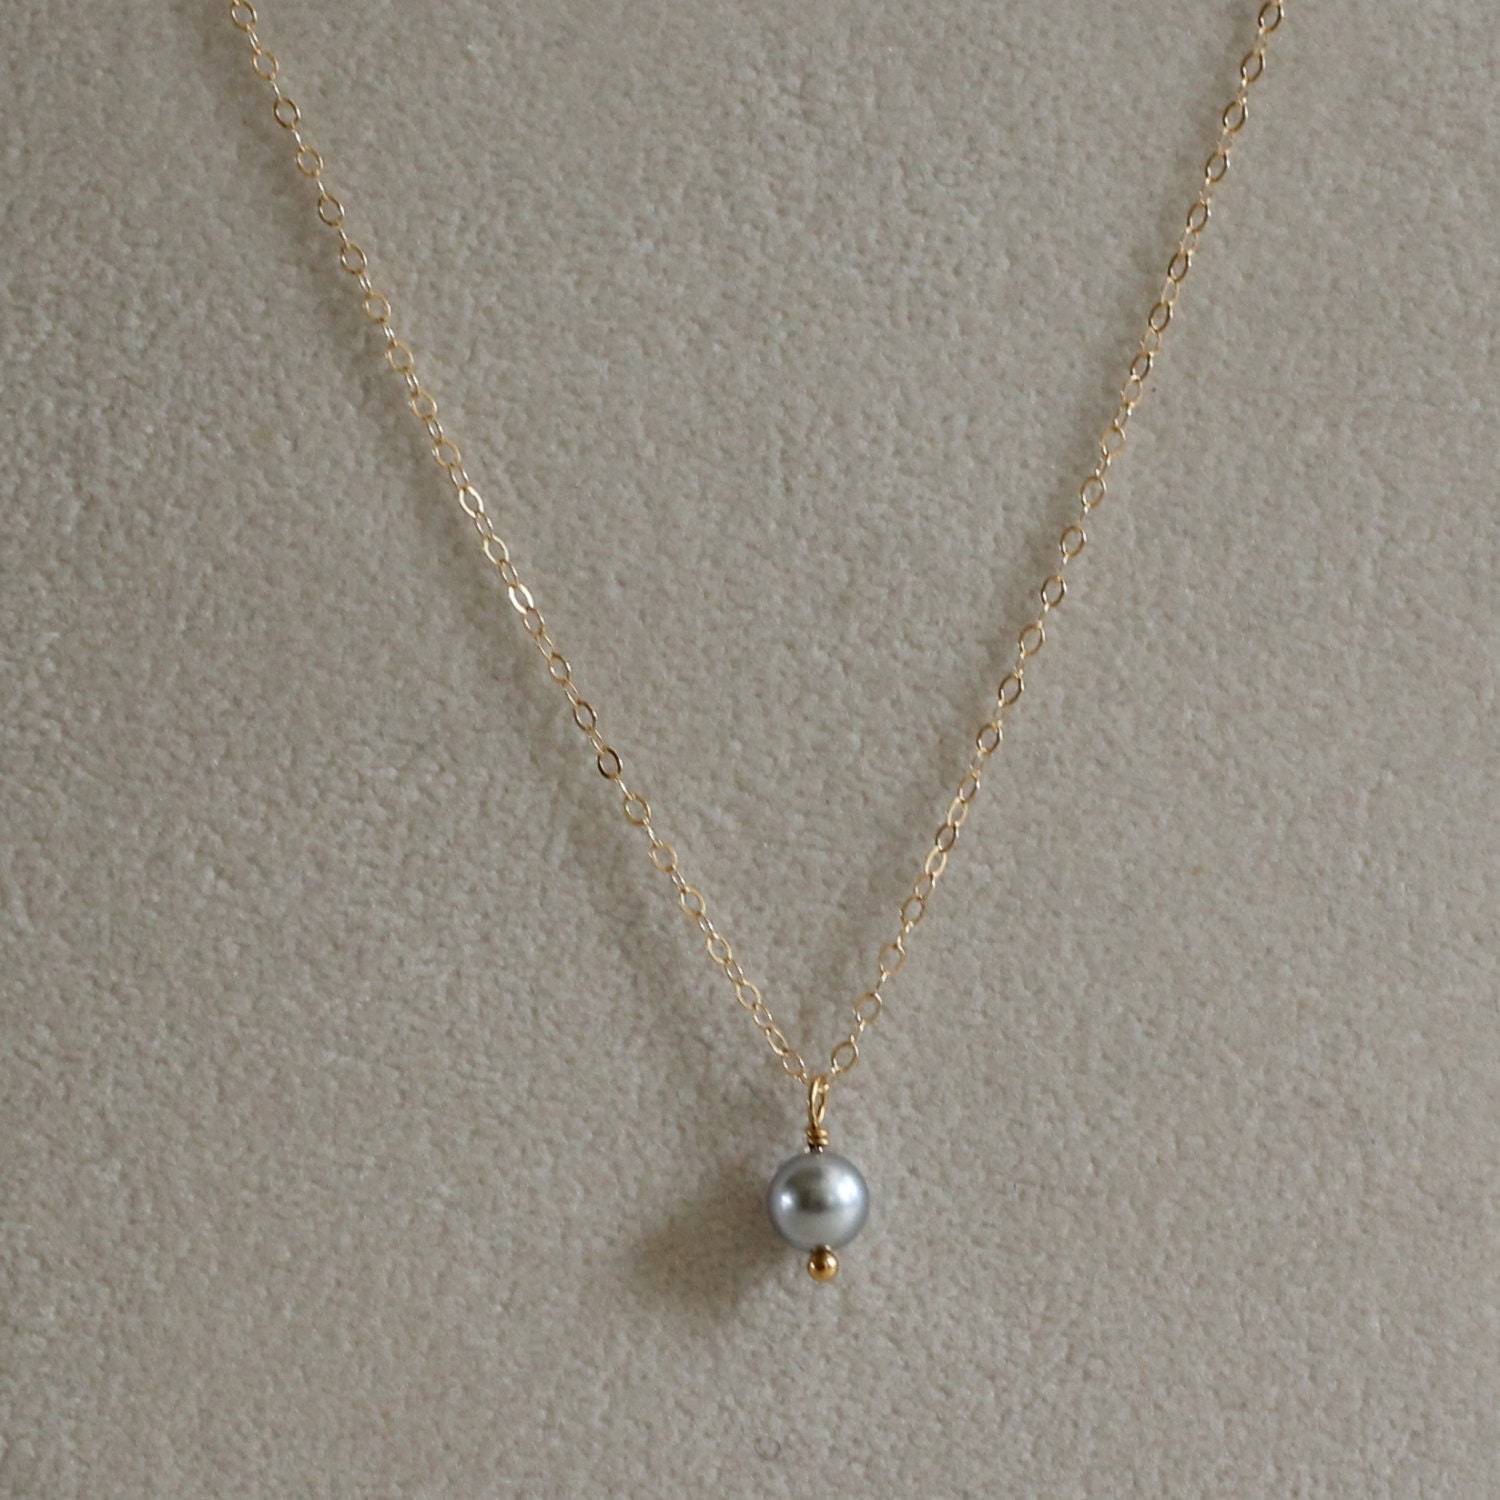 Small Gray Pearl Pendant-Gray Pearl Necklace-Tiny Gray | Etsy